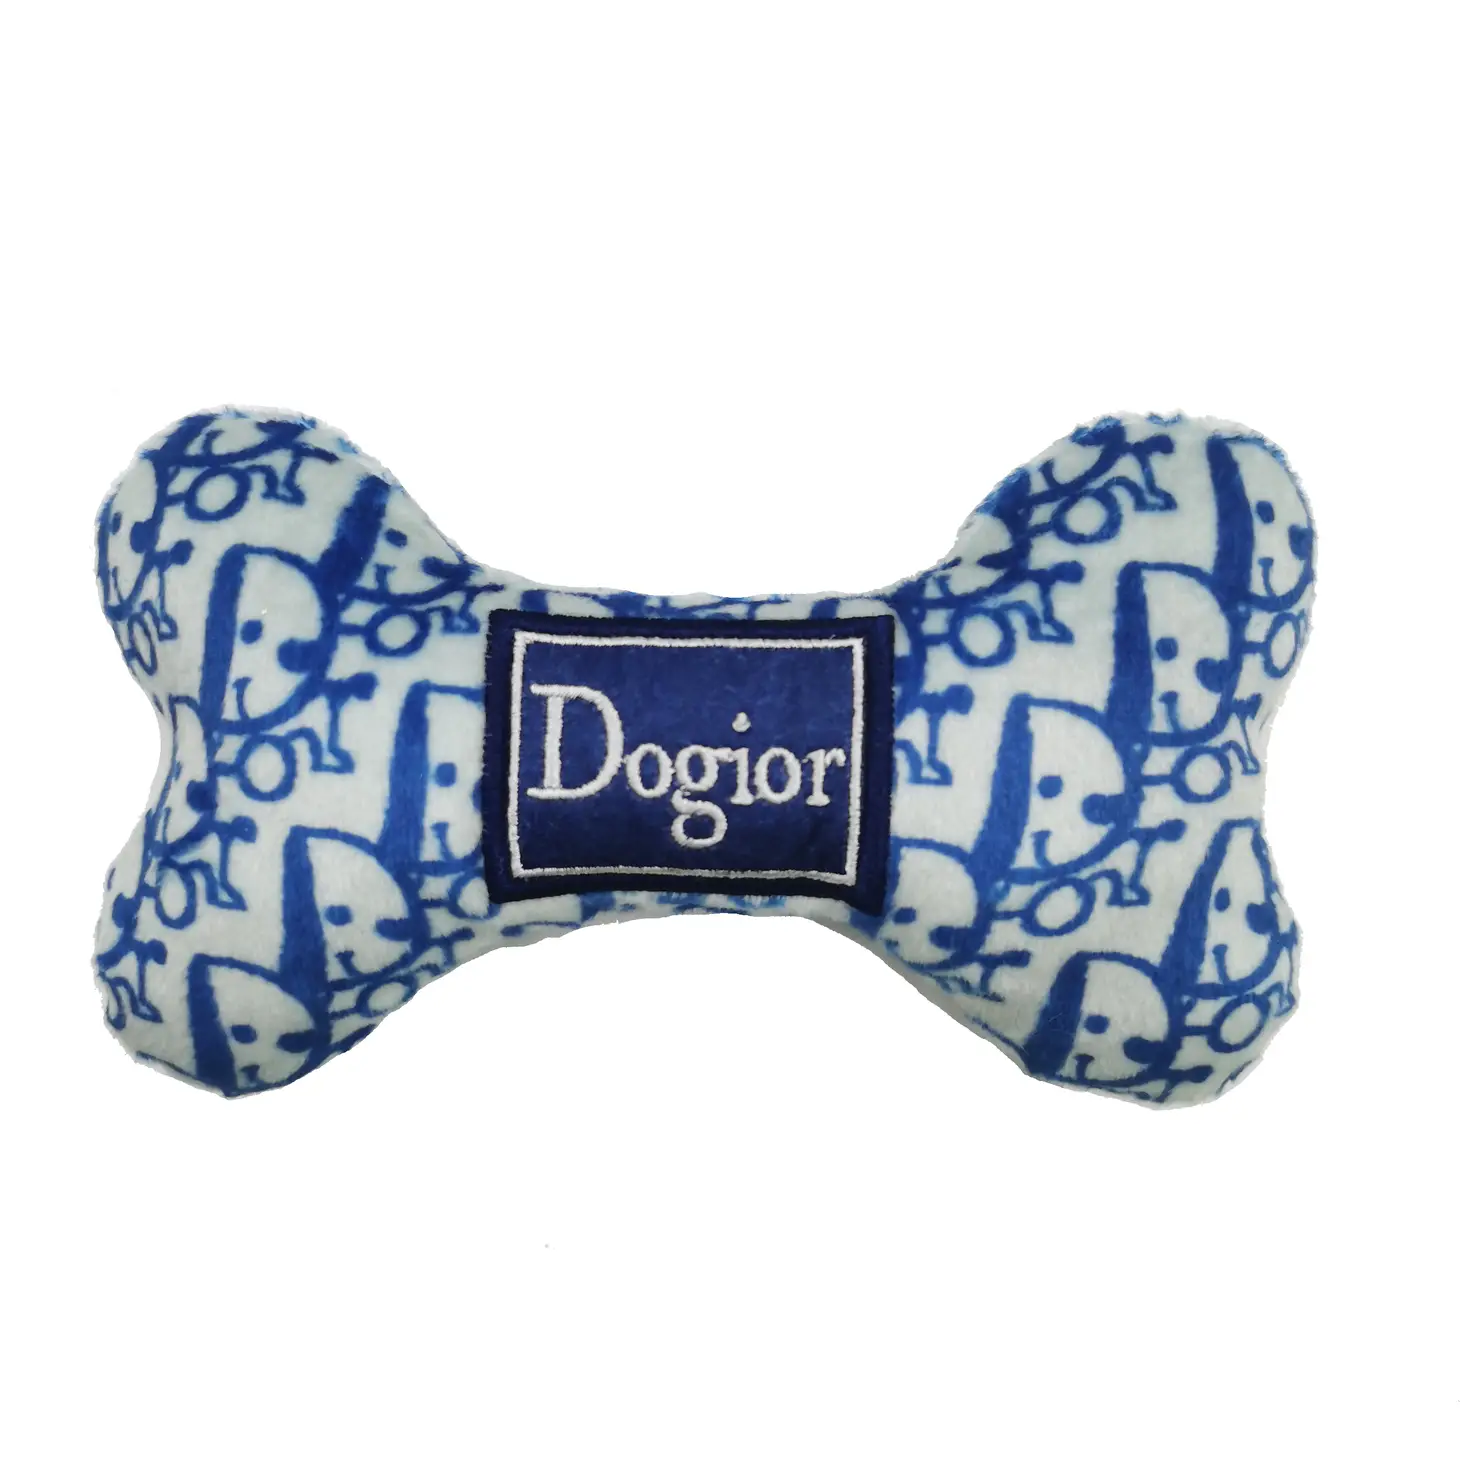 Dogior Bone - Danshire Market and Design 